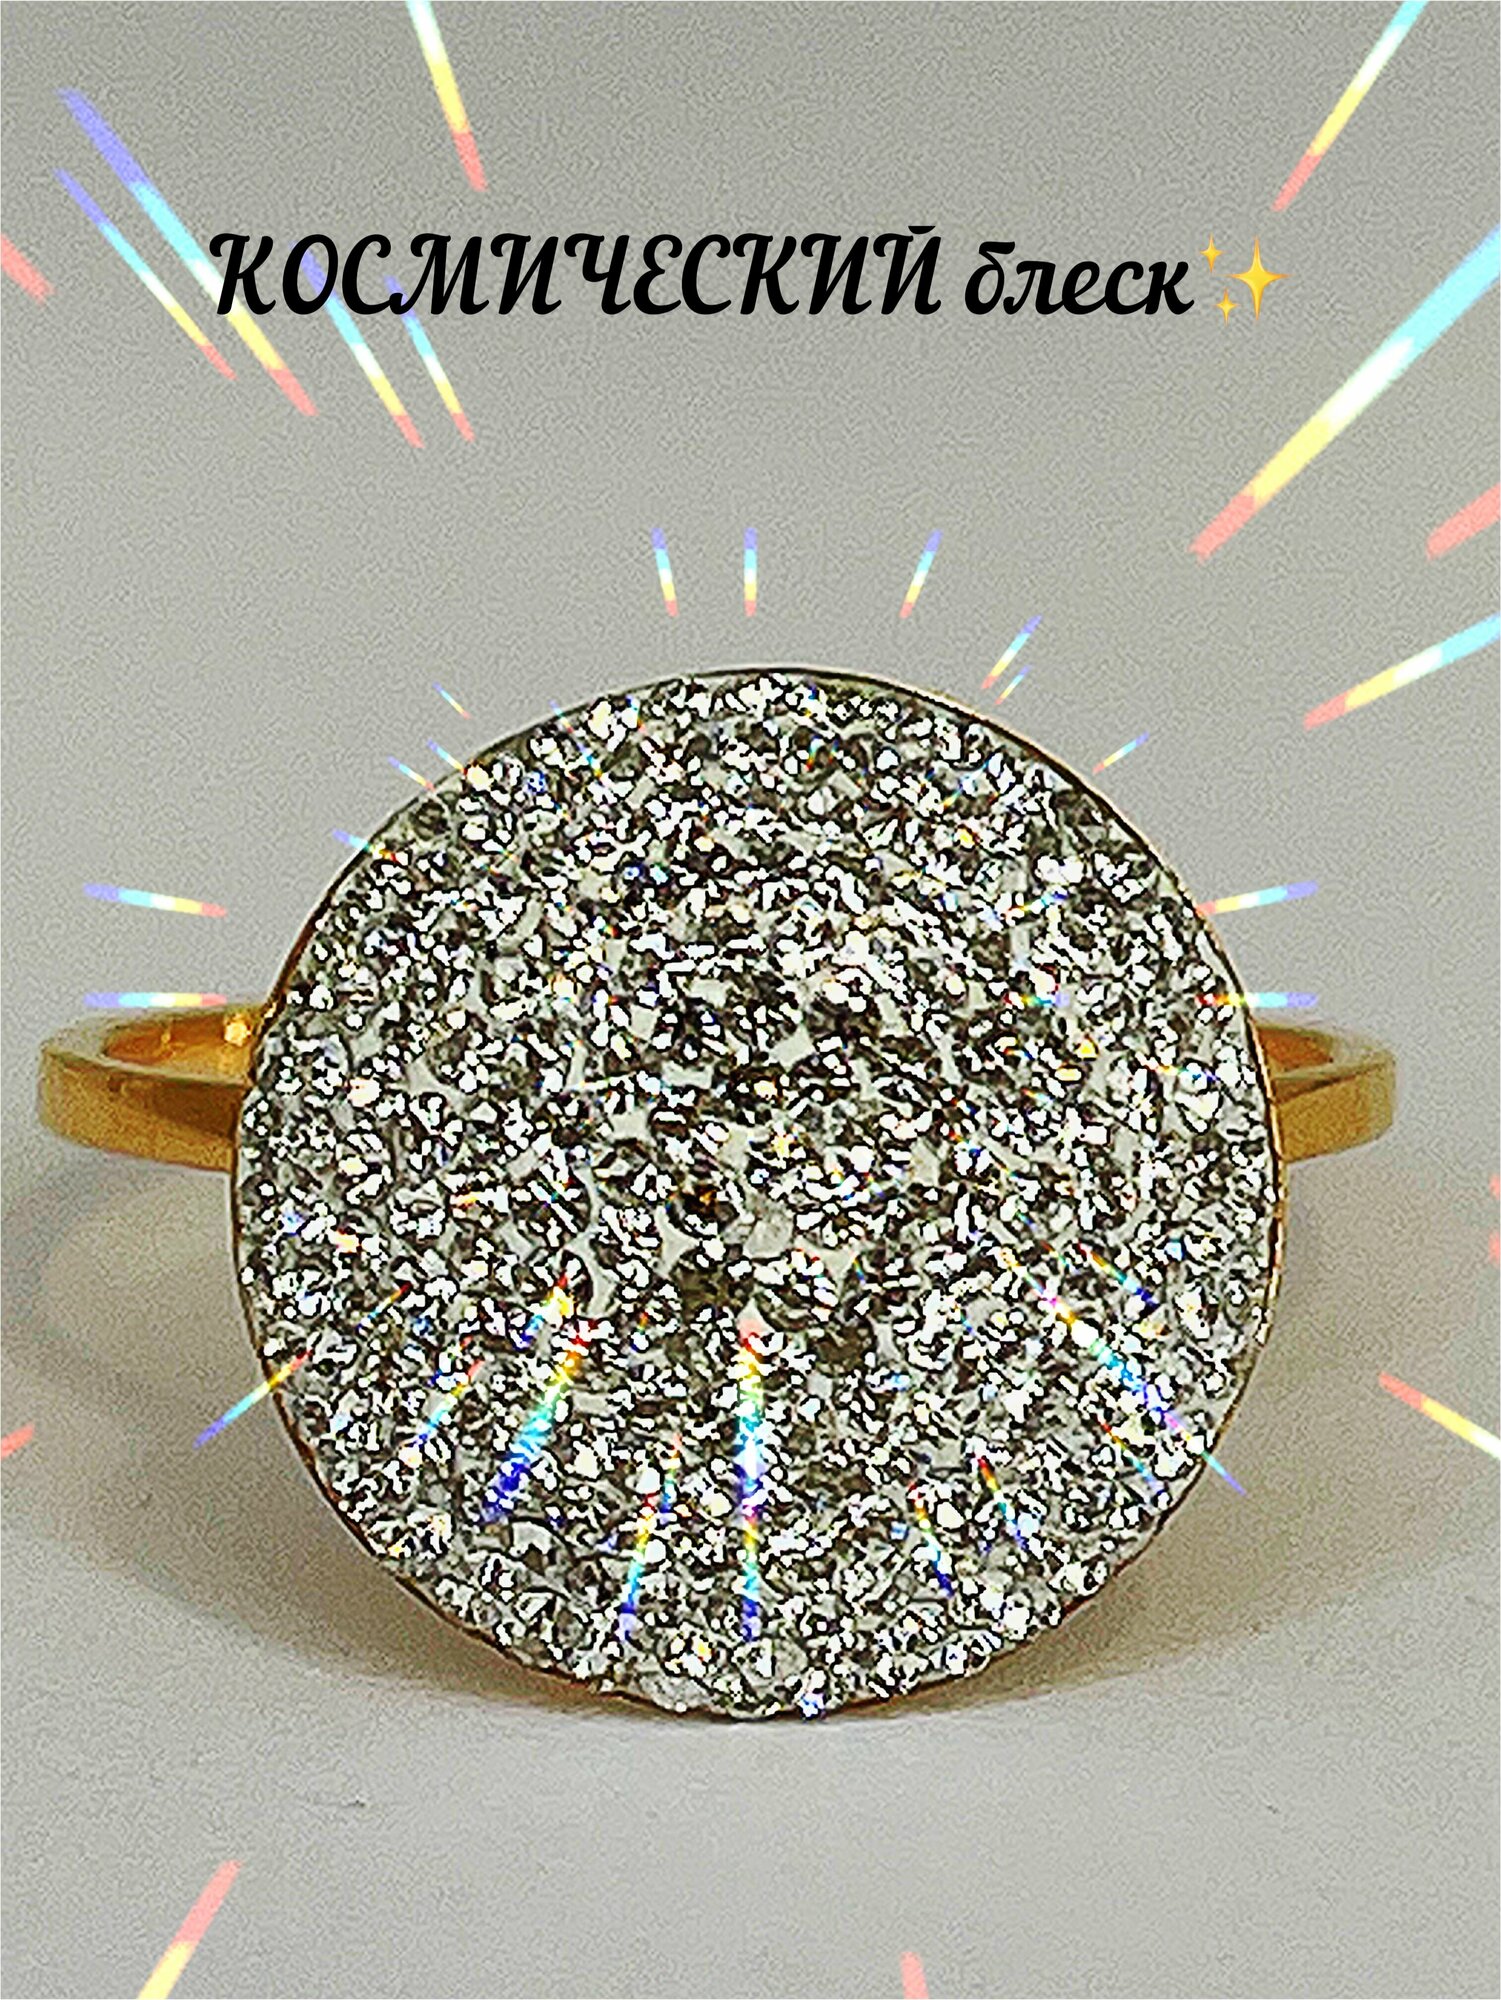 Перстень Стецова Е.А., красное золото, 585 проба, родирование, кристаллы Swarovski